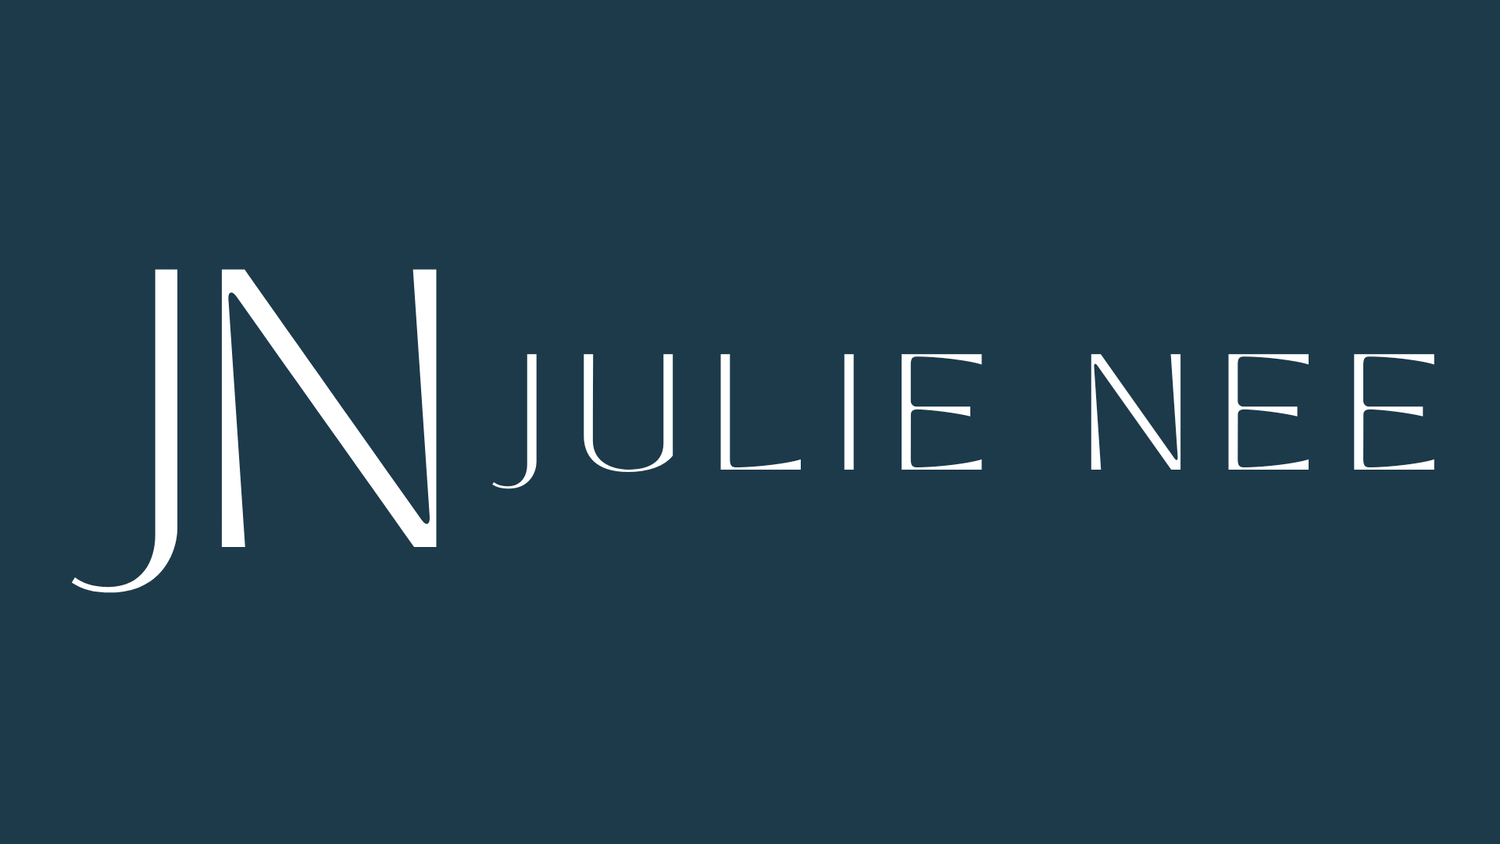 Julie Nee